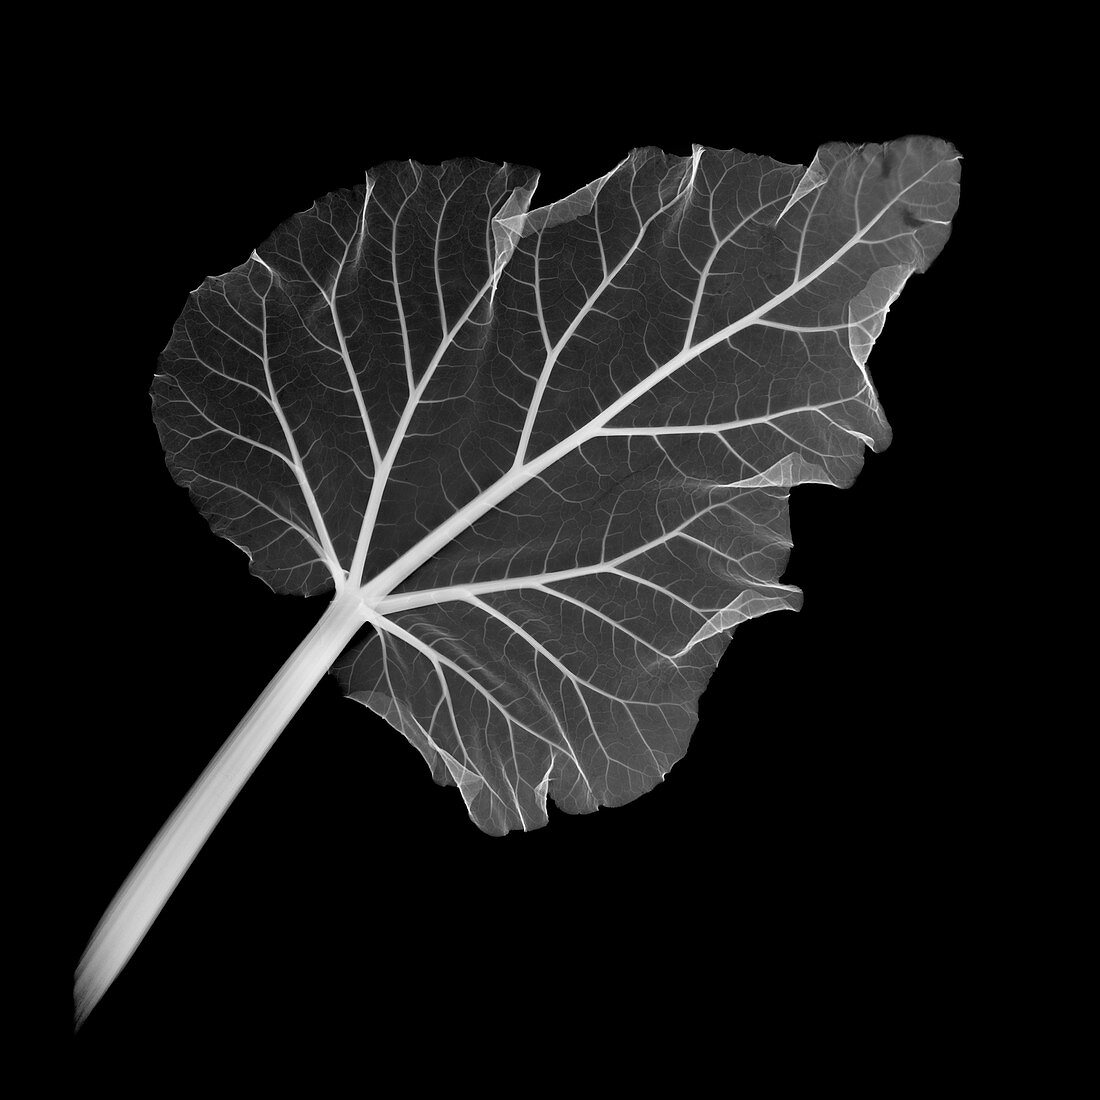 Rhubarb leaf, X-ray